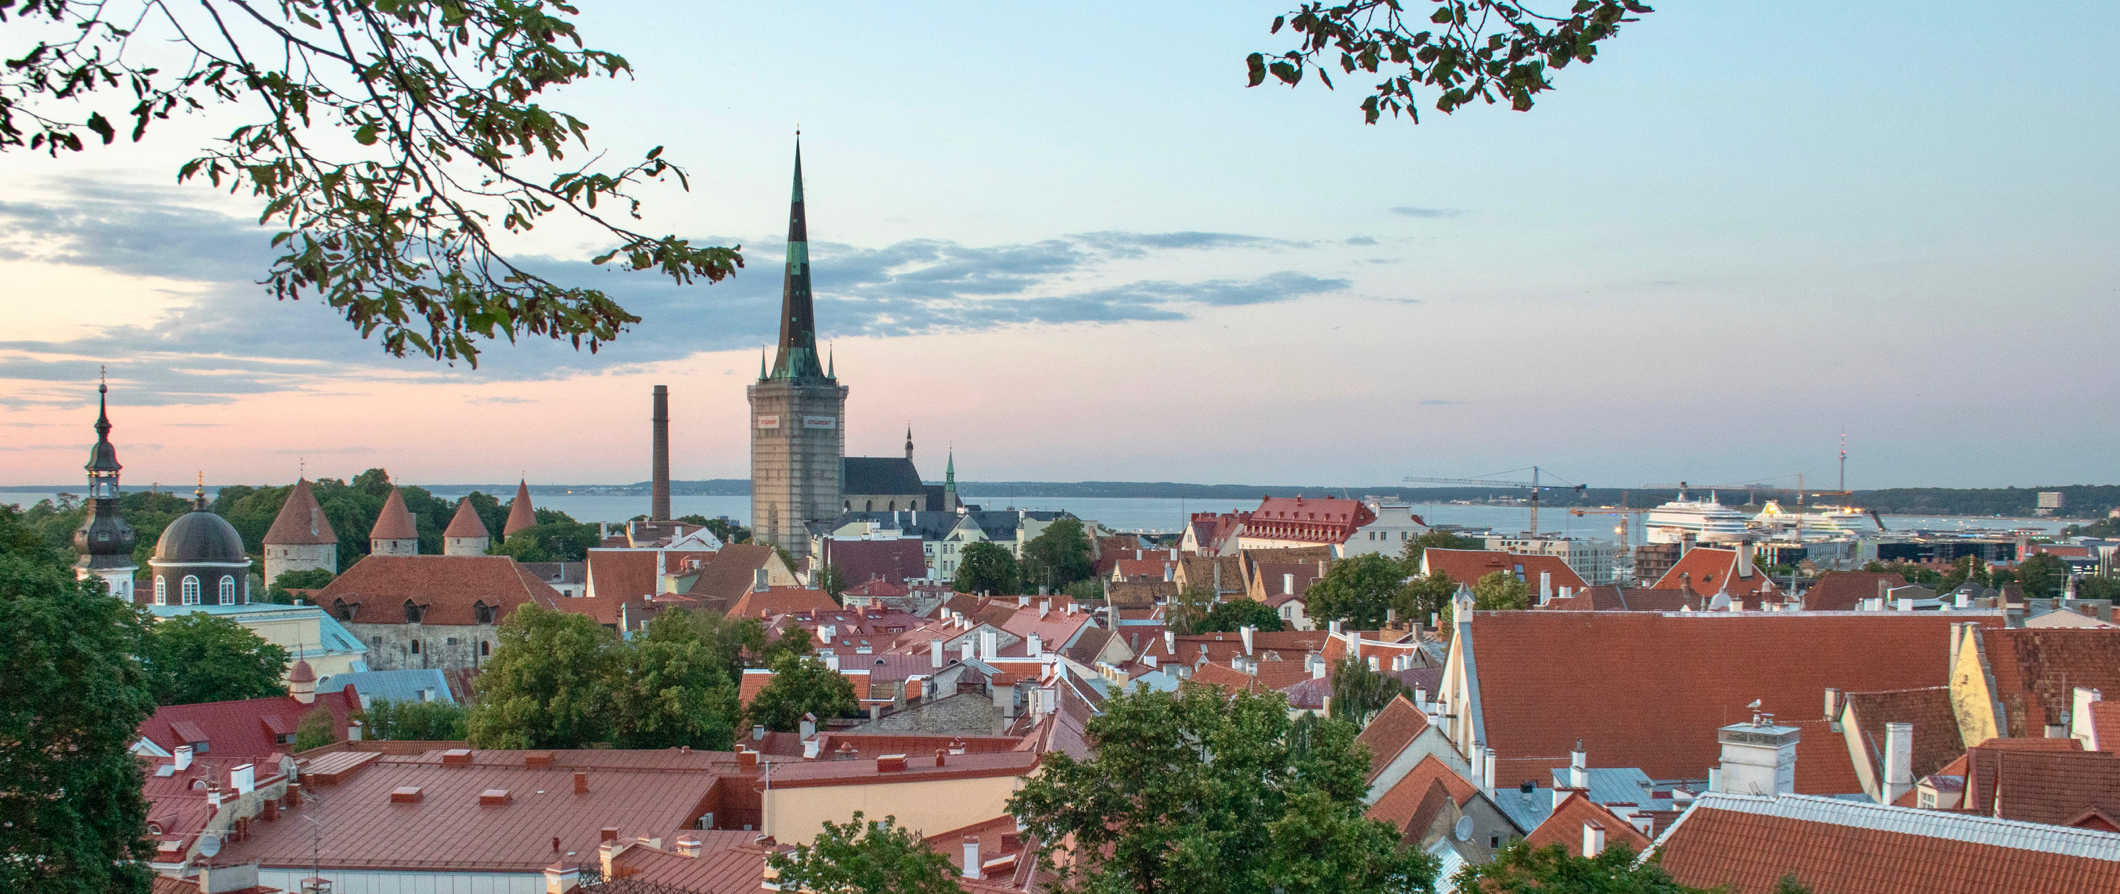 The historic Old Town of beautiful Tallinn, Estonia during sunset